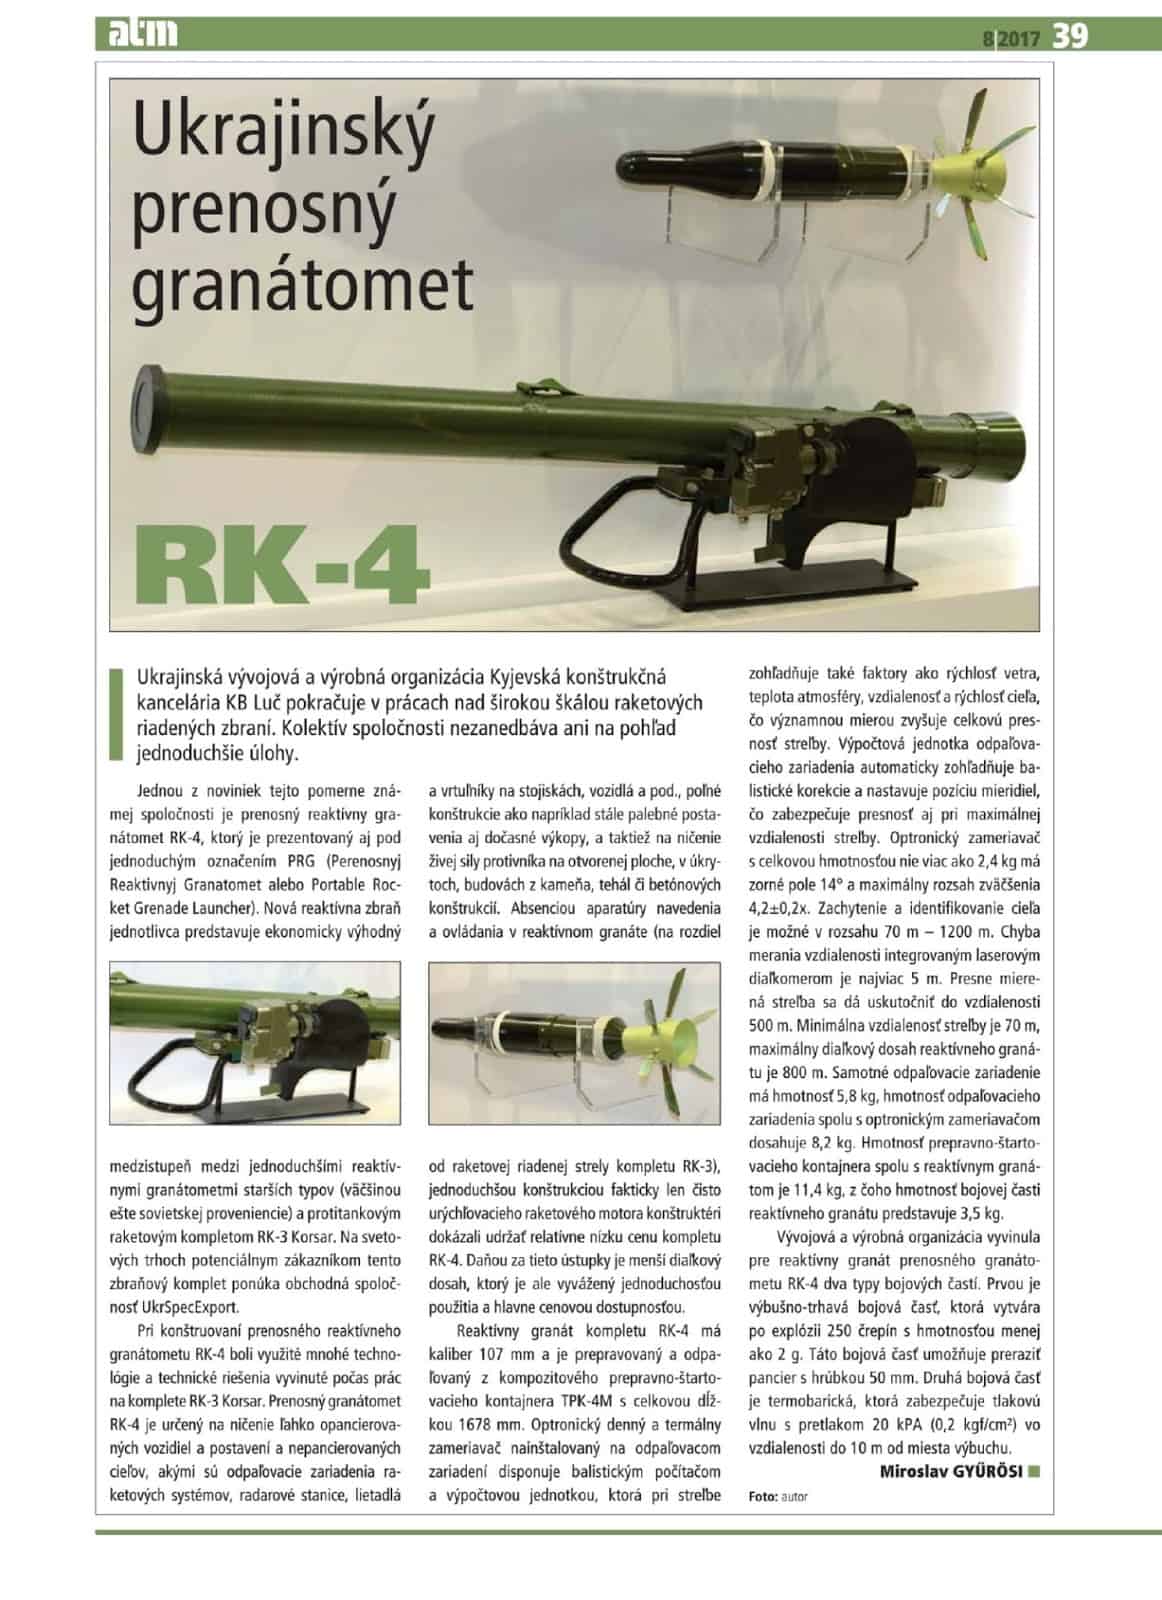 Гранатомет RK-4